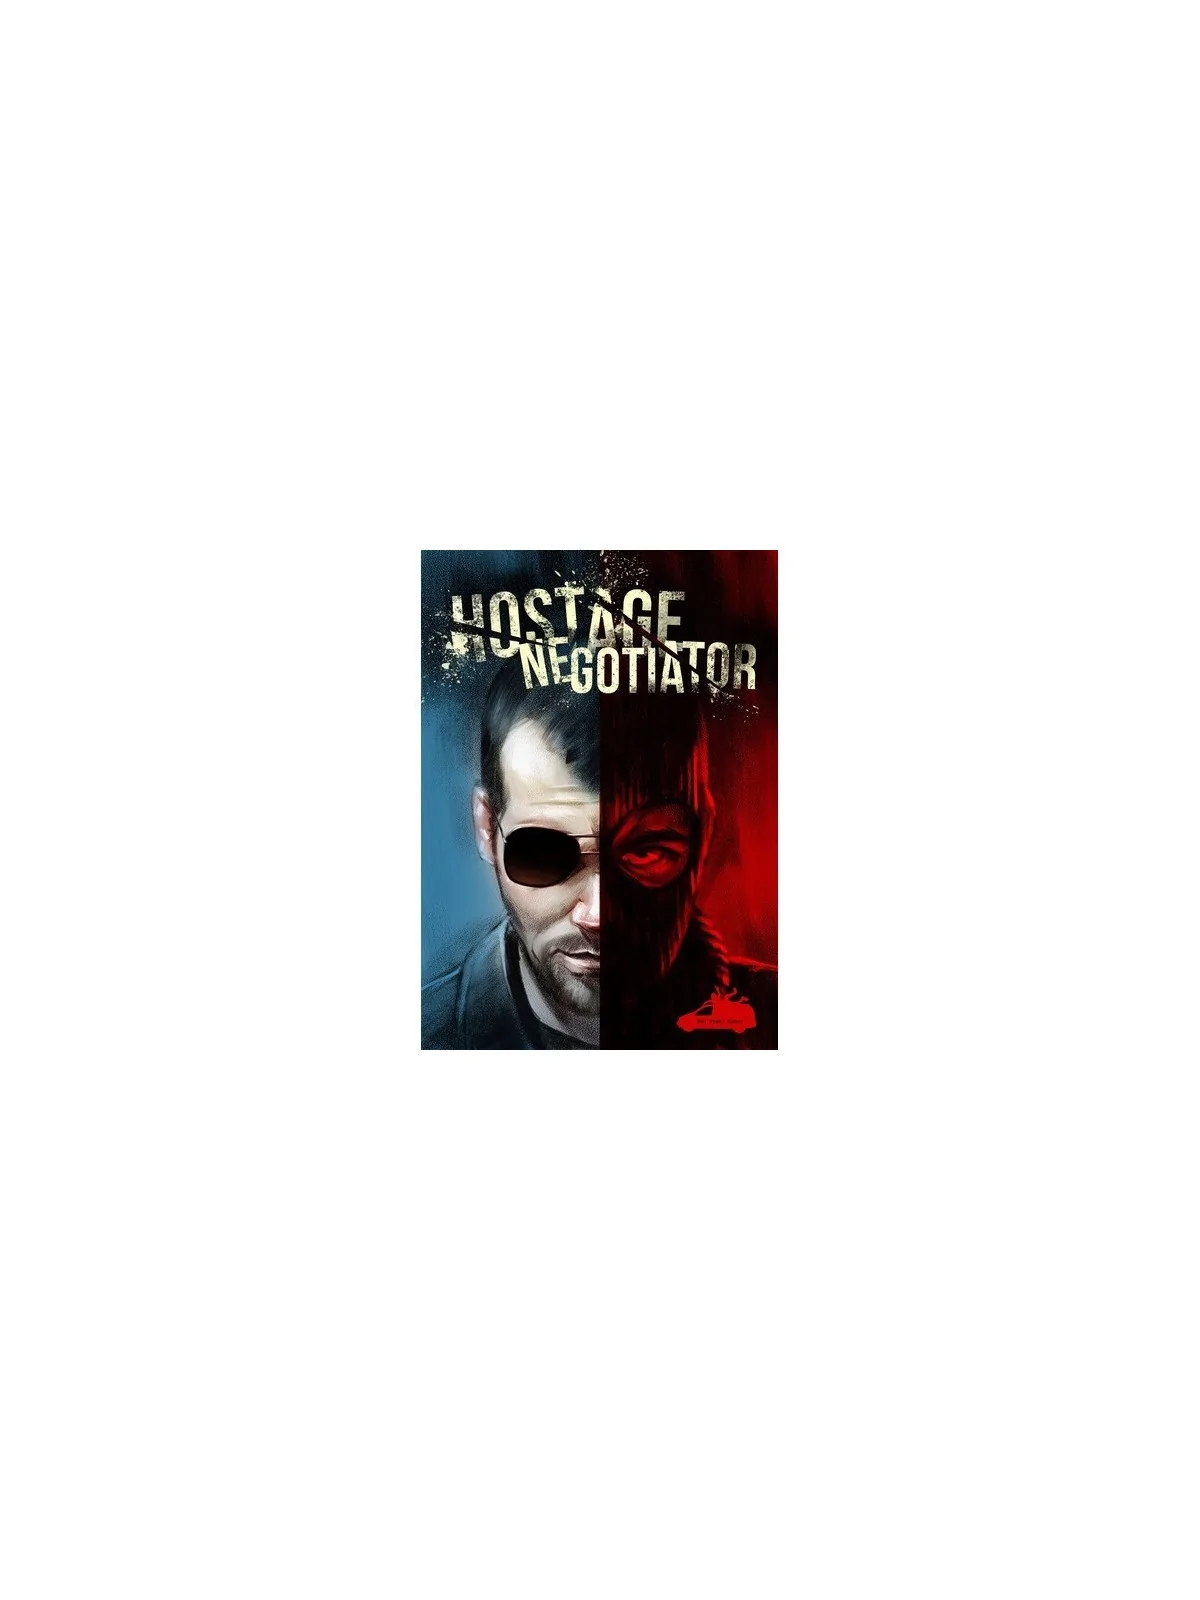 Comprar Hostage El Negociador barato al mejor precio 21,55 € de Last L